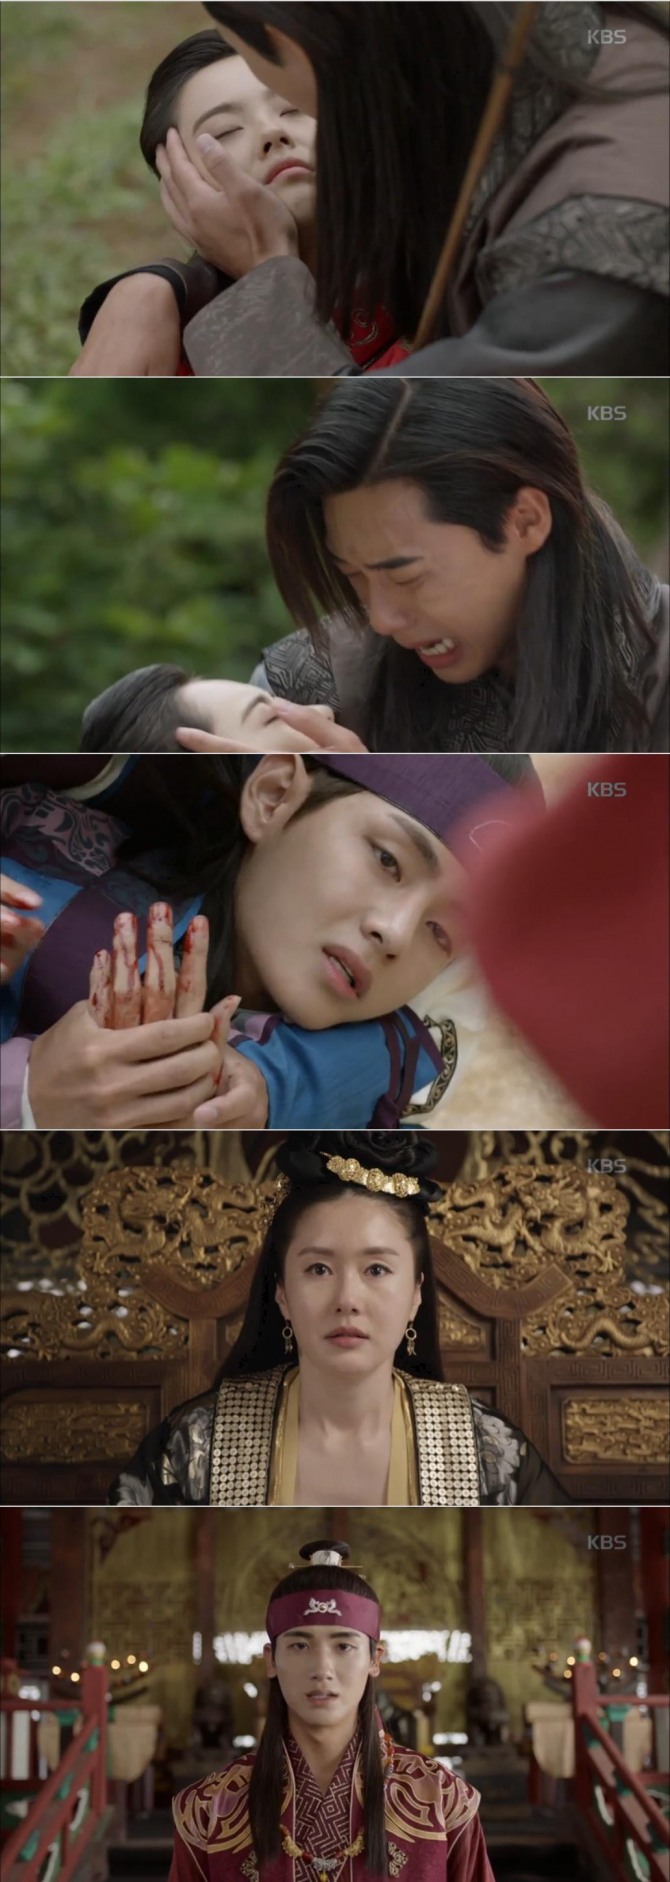 14일 밤 방송된 KBS2 월화드라마 '화랑' 18회에서 원화가 된 아로(고아라)는 선우(박서준)를 대신해 활을 맞고 쓰러졌다./사진=KBS2 방송 캡처